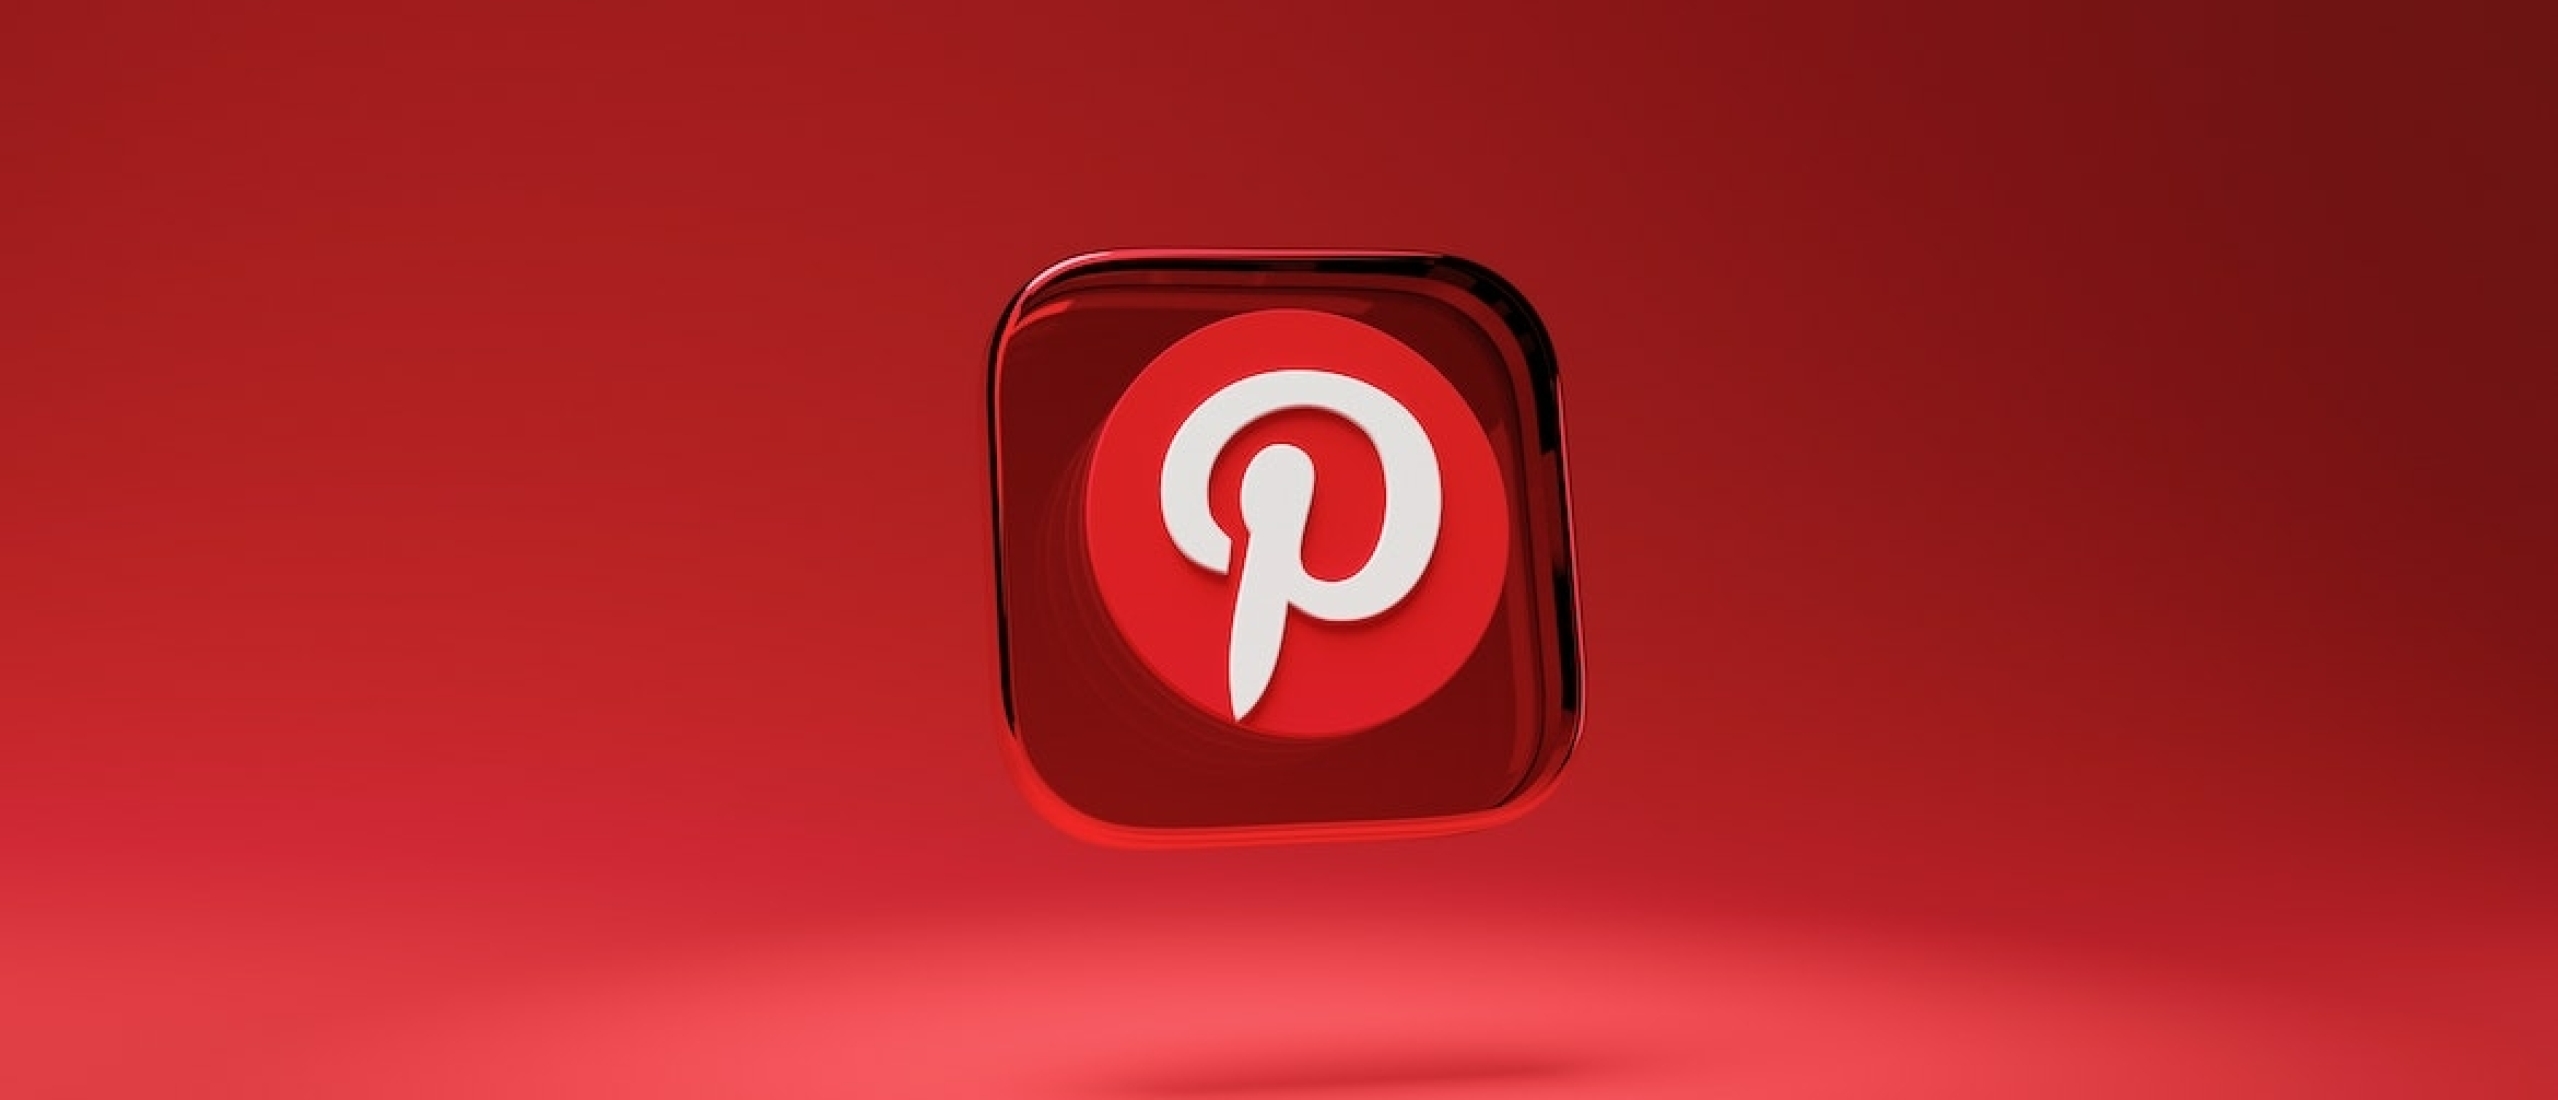 Pinterest zet extra in op e-commerce met vier nieuwe functies